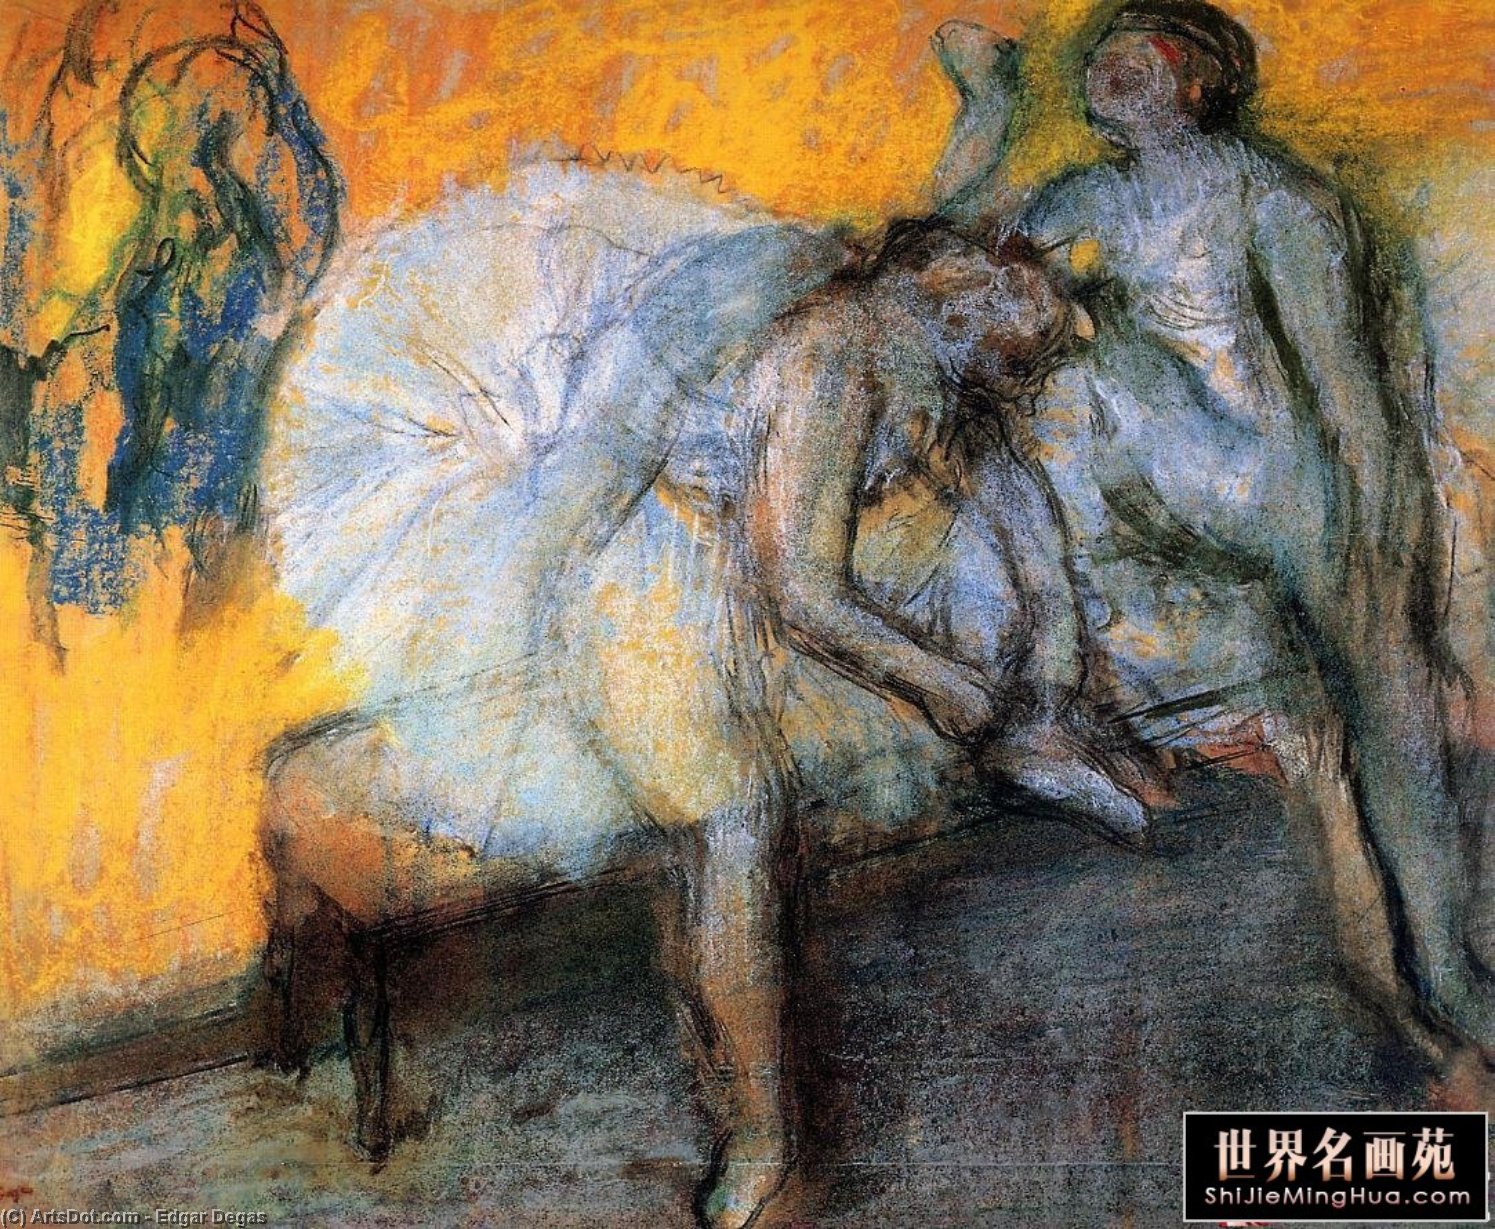 WikiOO.org - אנציקלופדיה לאמנויות יפות - ציור, יצירות אמנות Edgar Degas - Two Dancers Resting